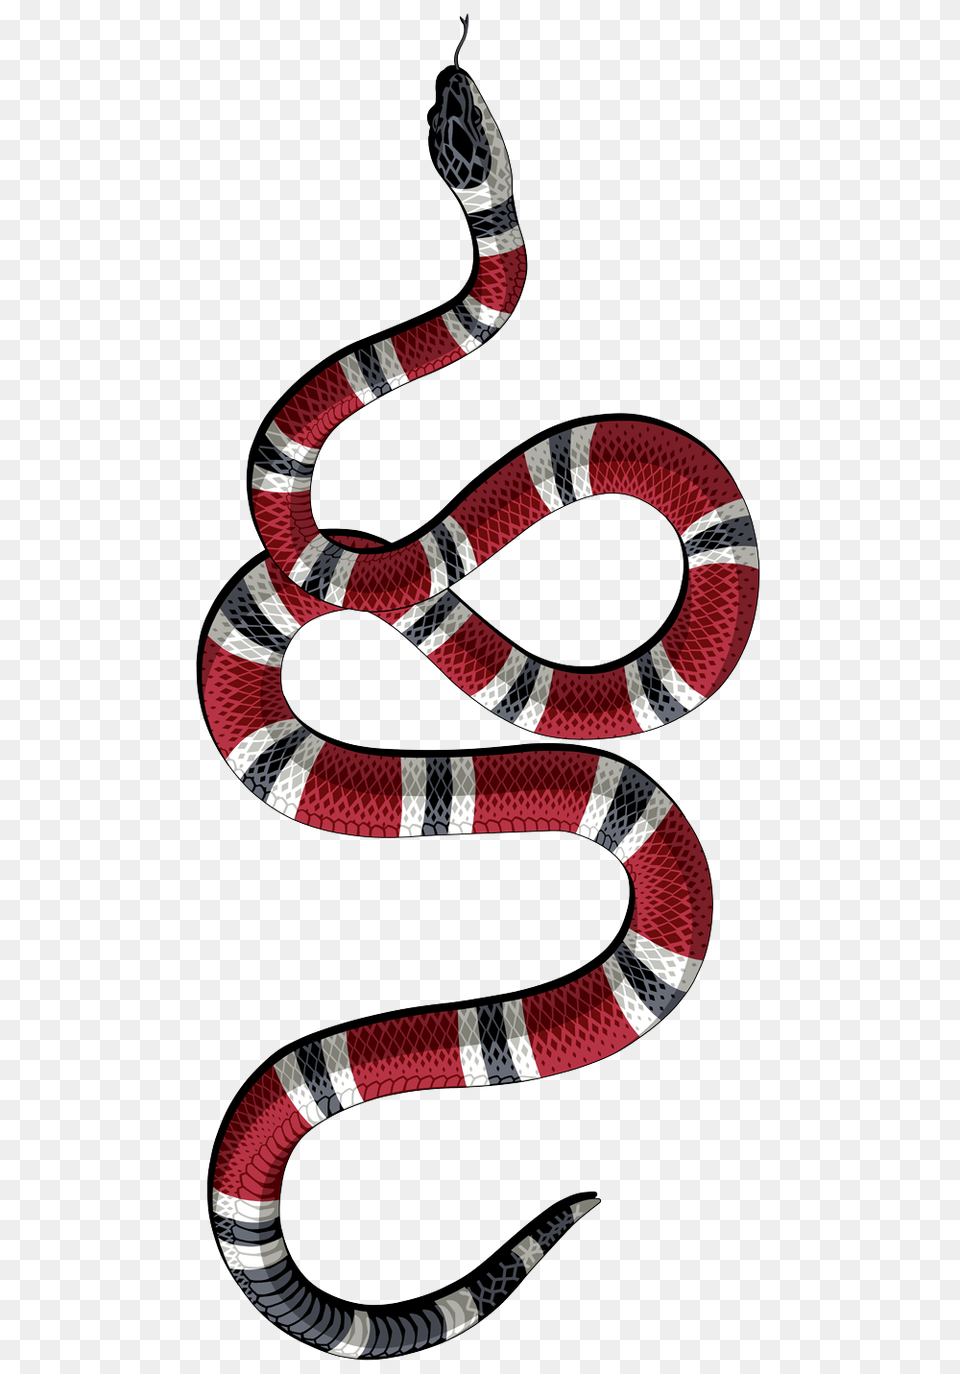 Logos In Wallpaper Iphone, Animal, King Snake, Reptile, Snake Free Transparent Png